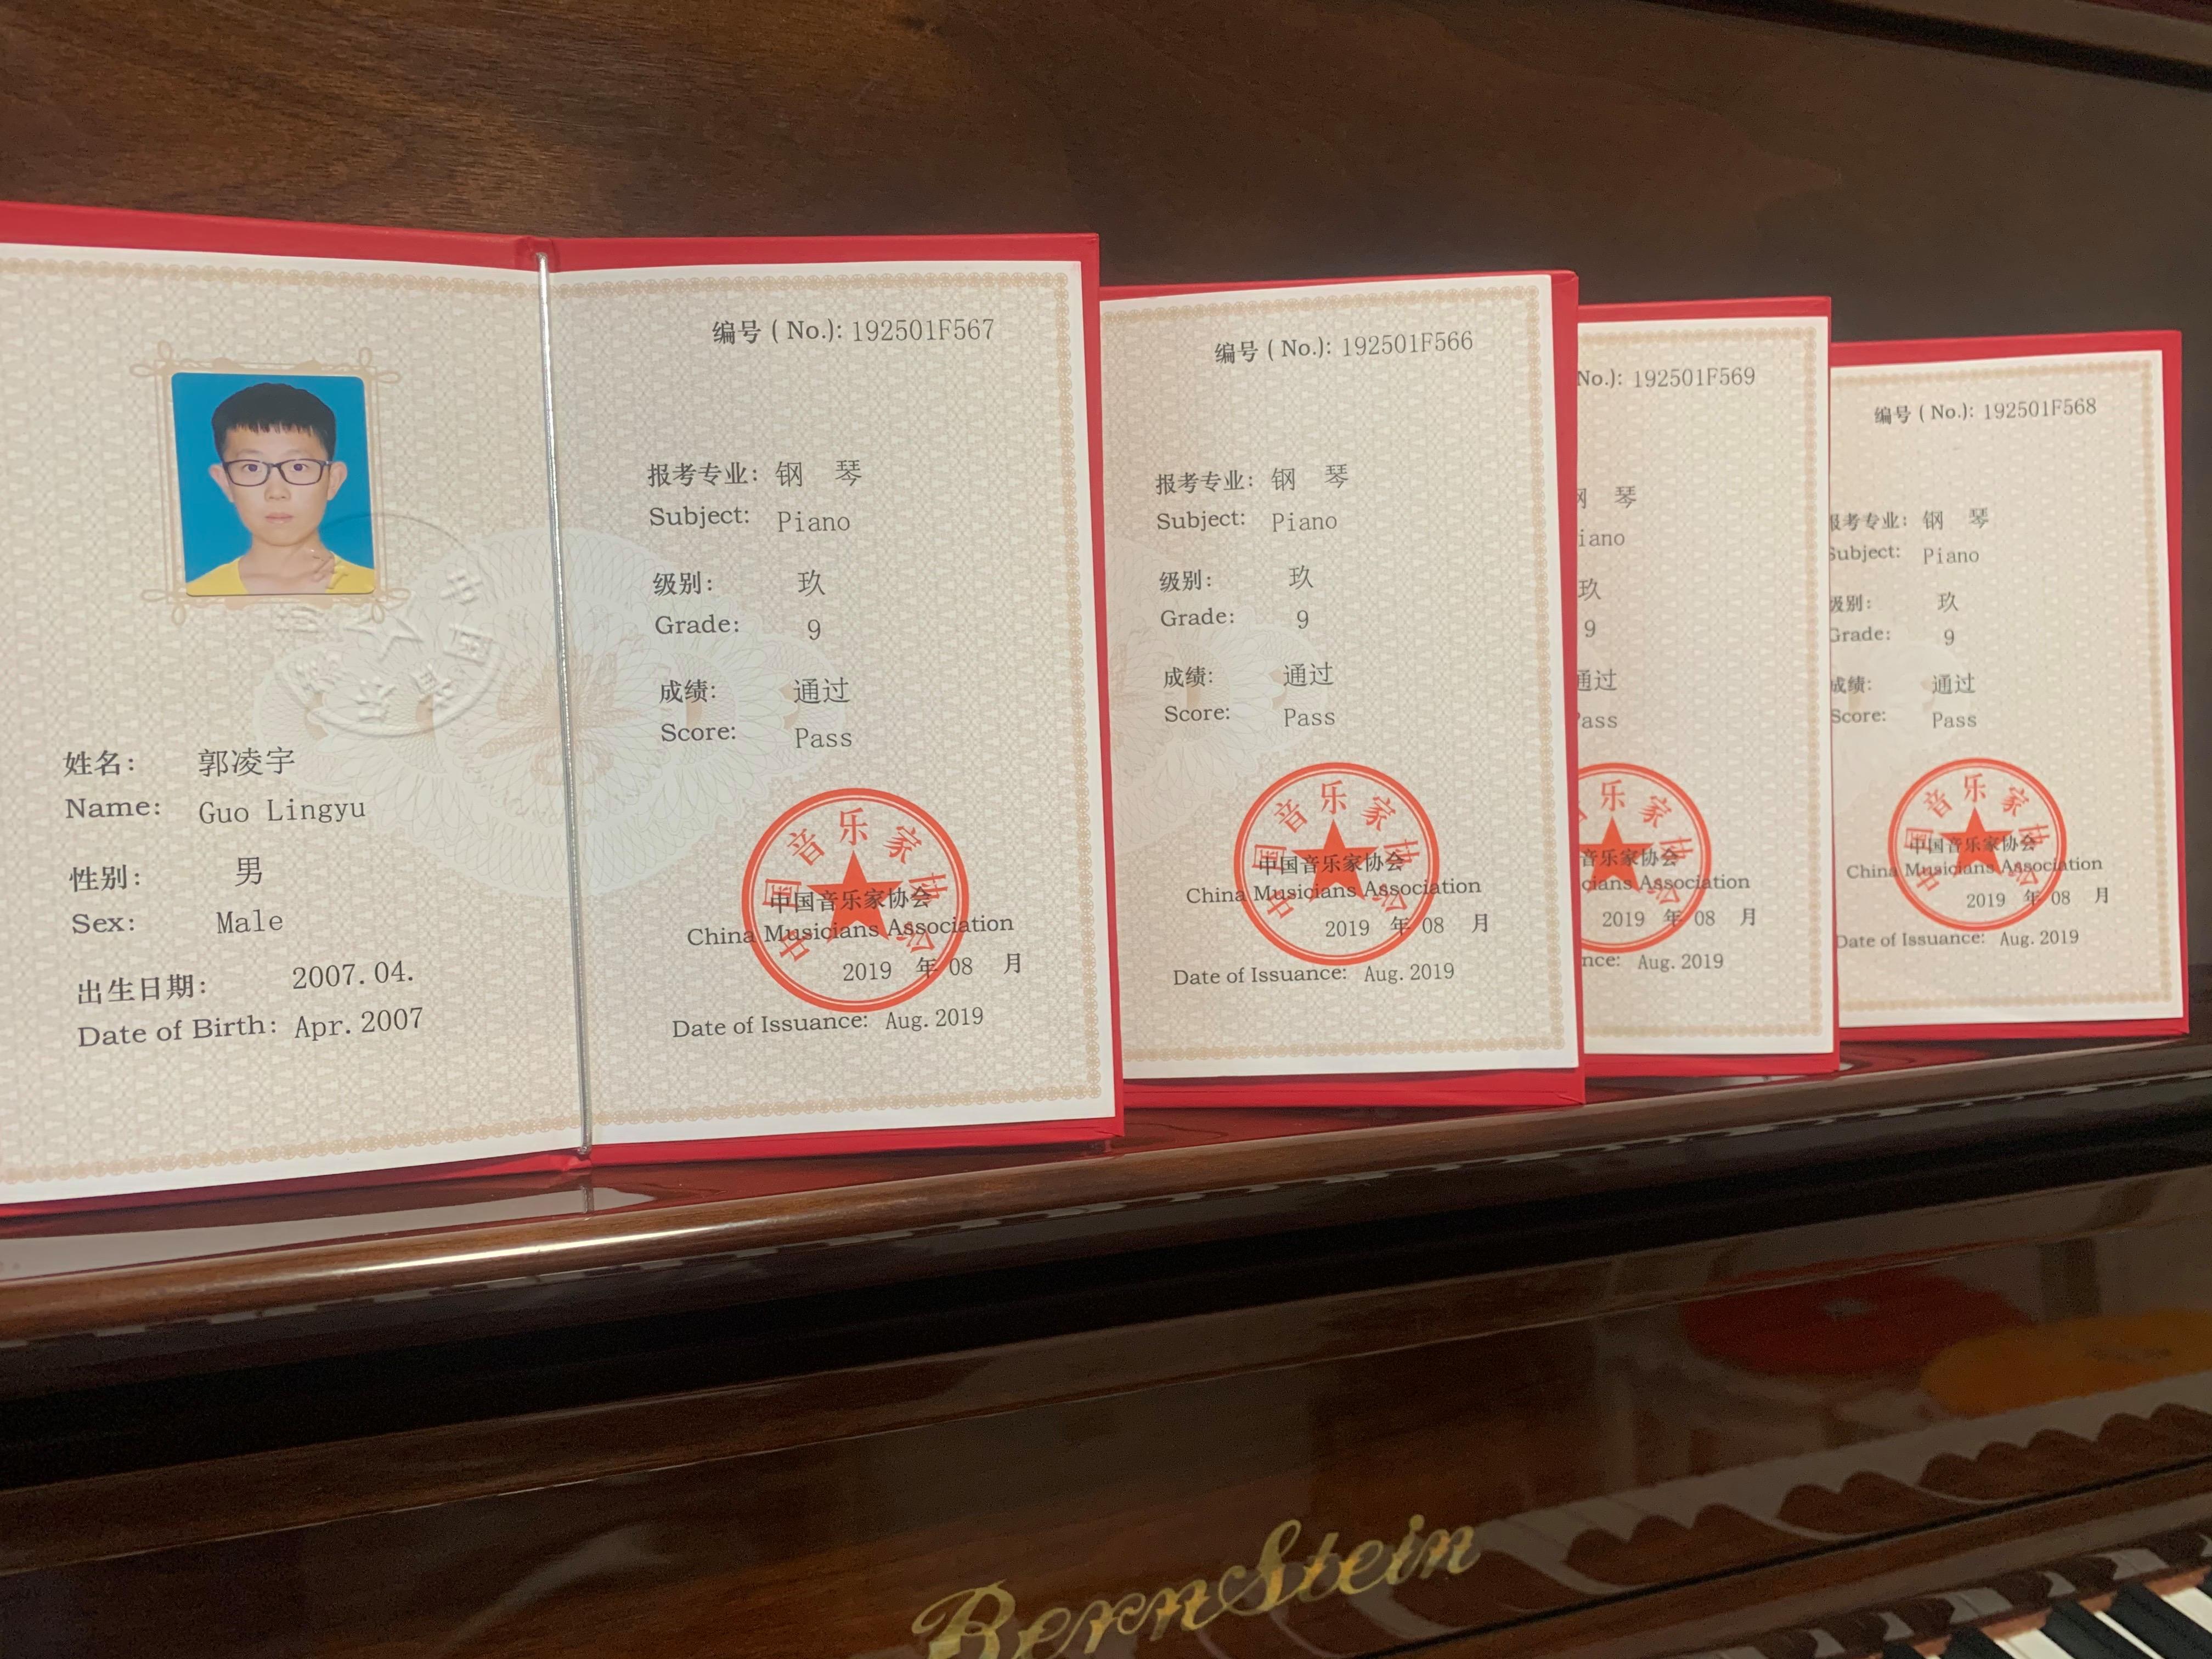 广东省音协钢琴考级2019暑期时间(广东省音协钢琴考级2019暑期时间表)